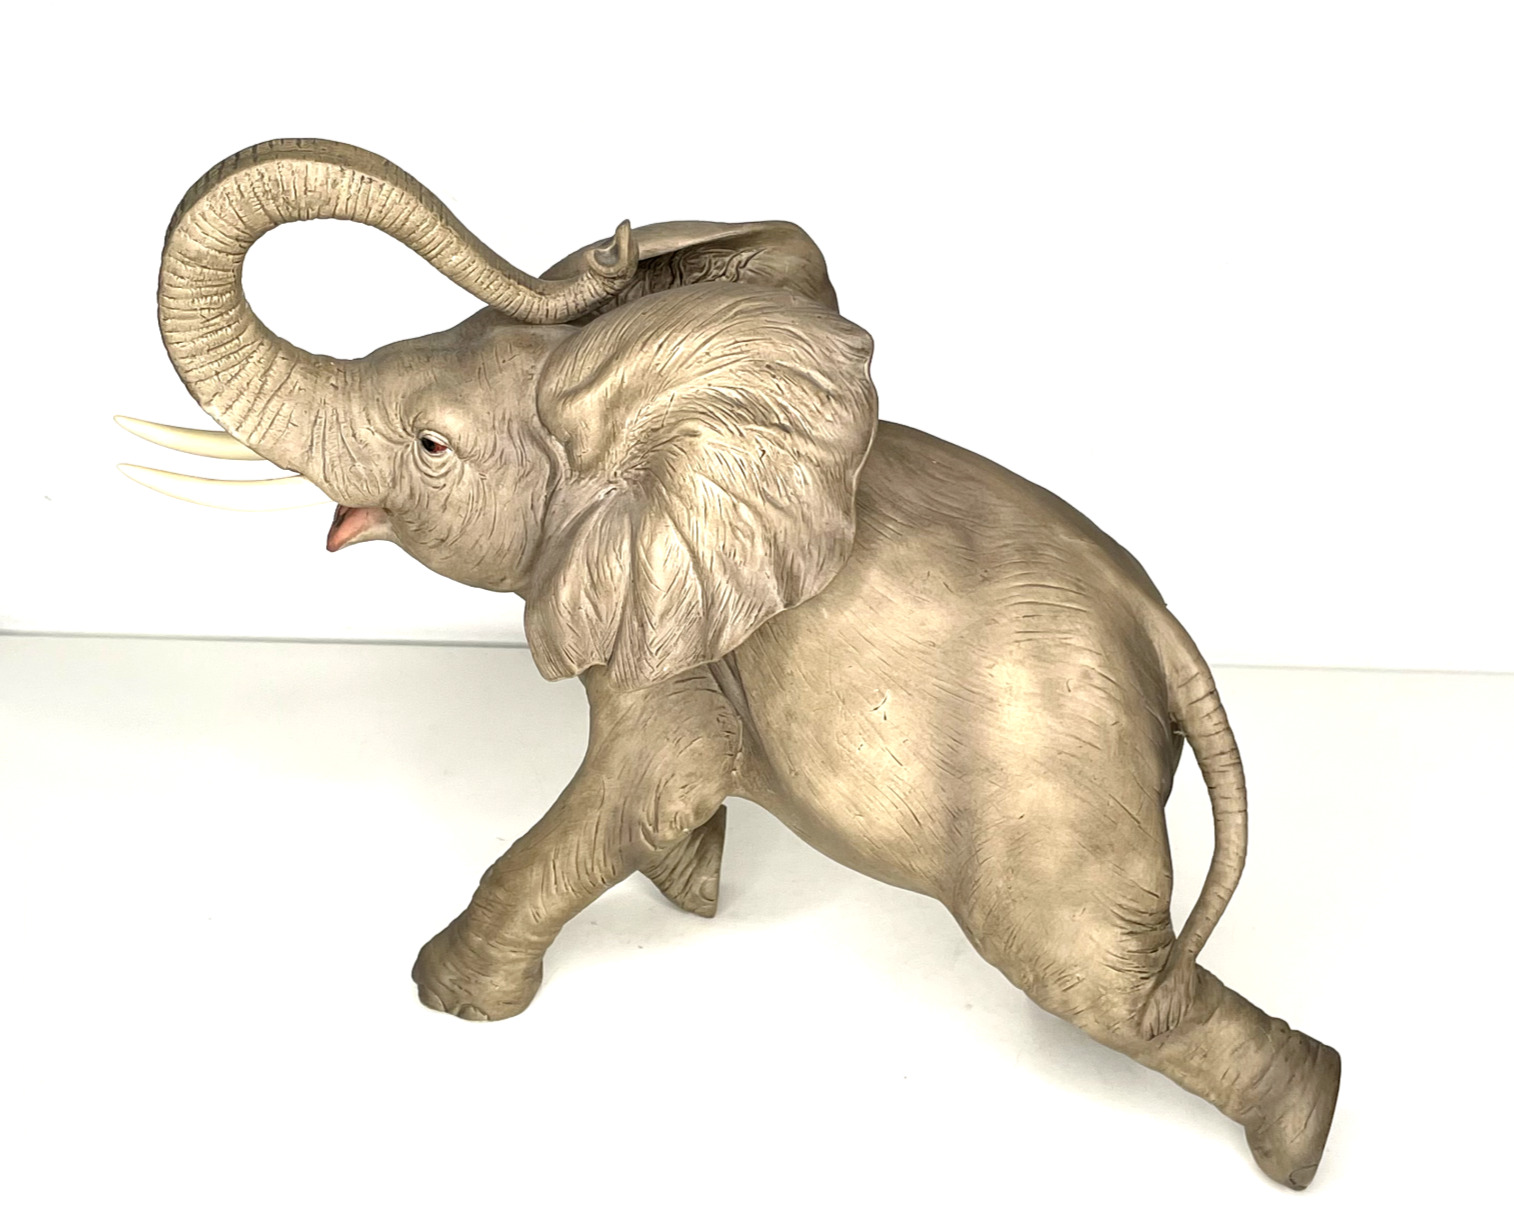 Vintage Porcelain Elephant Sculpture #7837 Large Made in Japan ANDREA SADEK